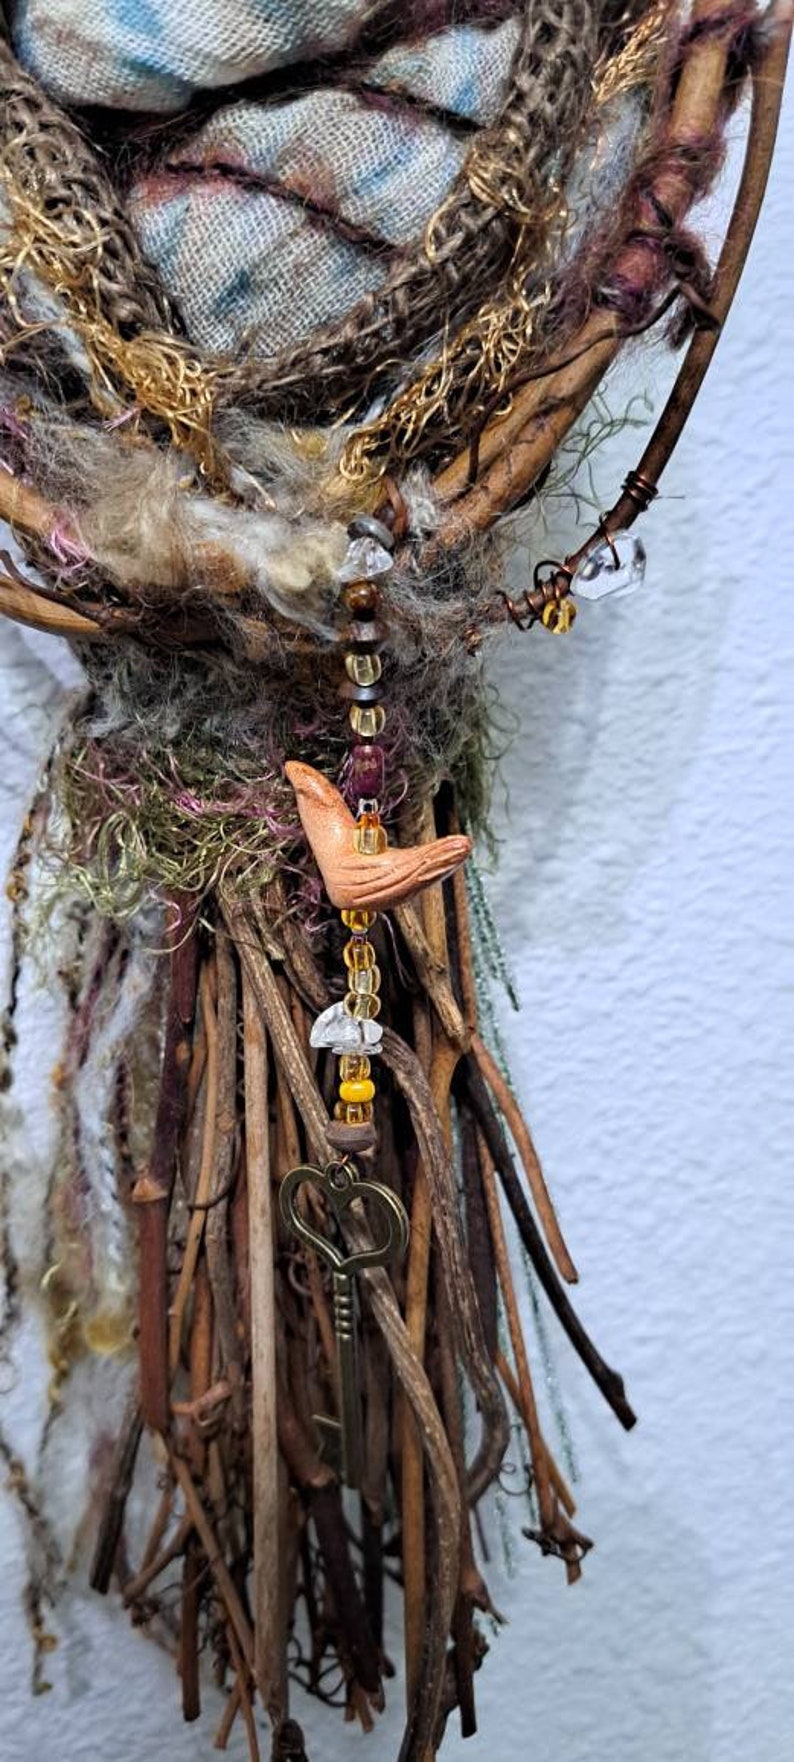 OOAK Art doll, Anthropomorphic Hare Spirit, Nature lover gift image 5